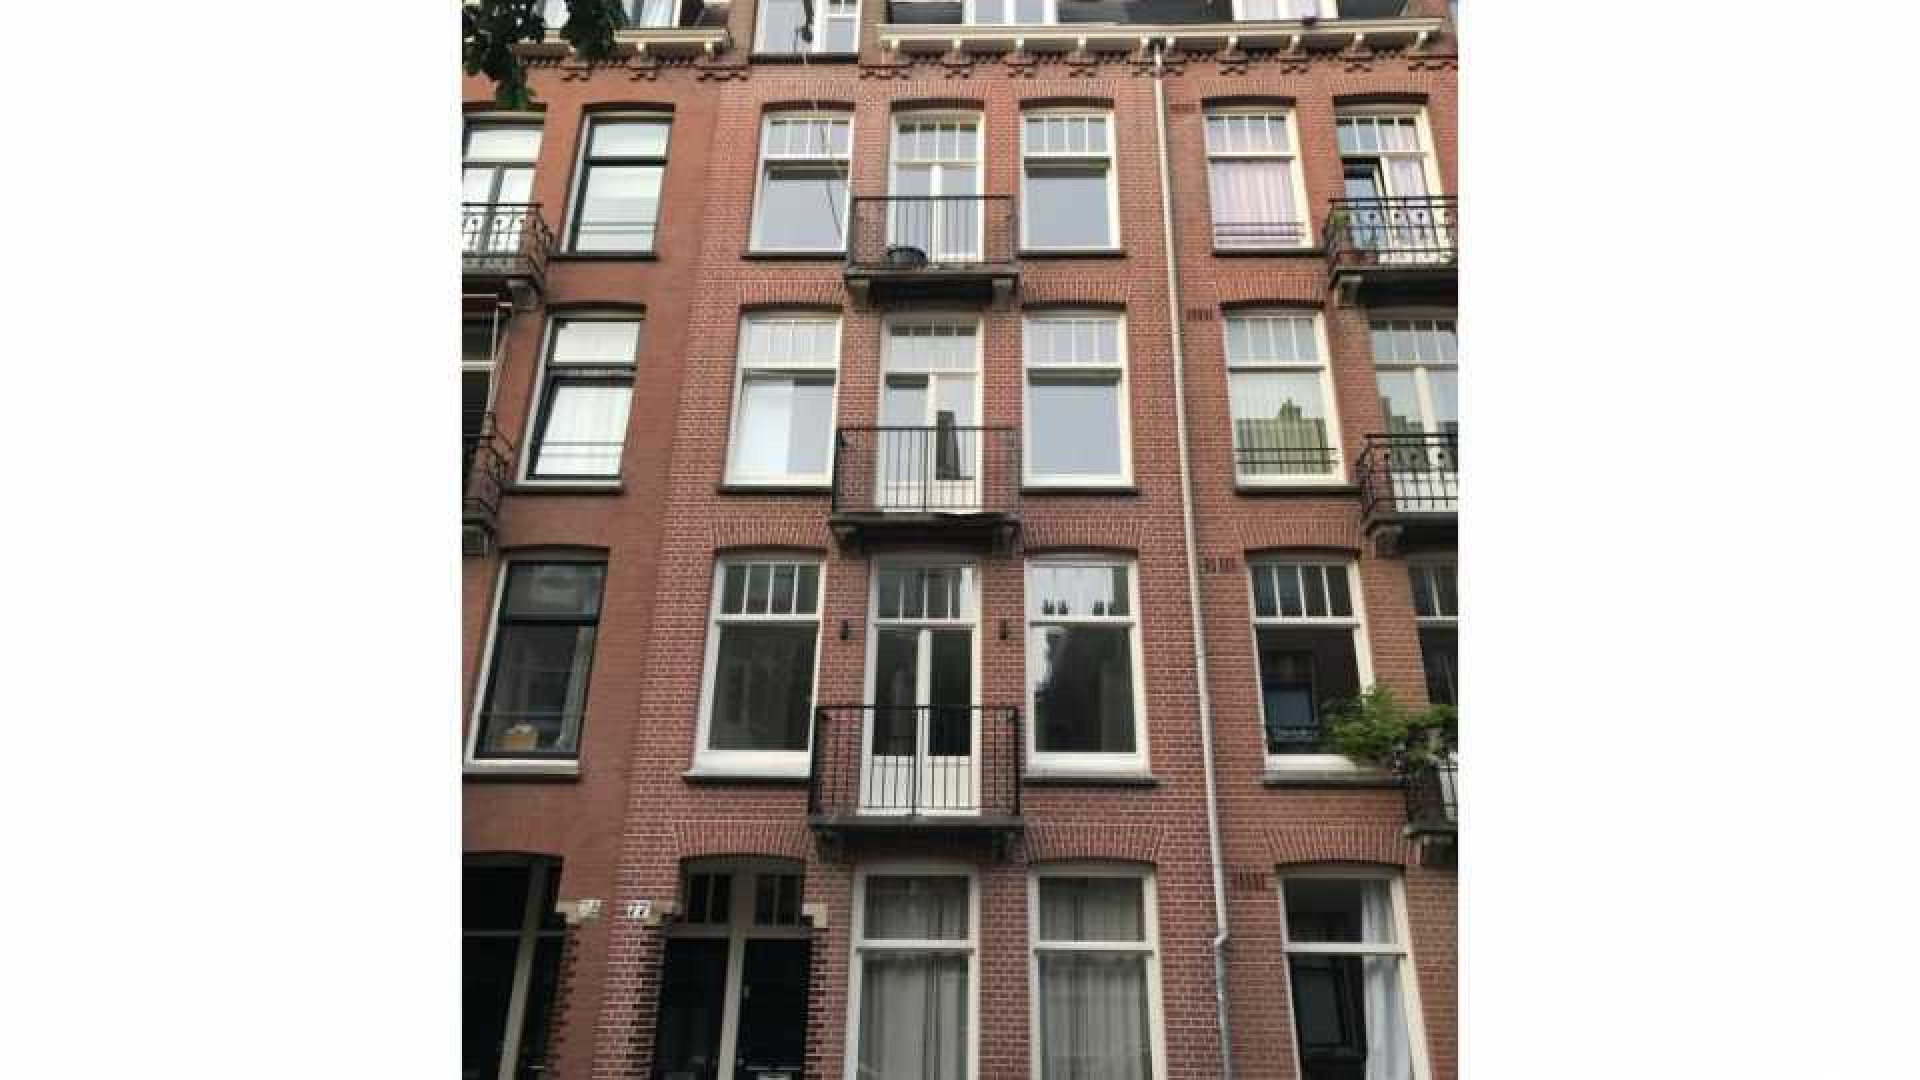 Ronald Koeman koopt voor bijna een miljoen dit dubbele bovenhuis in Amsterdam. Zie foto! 2